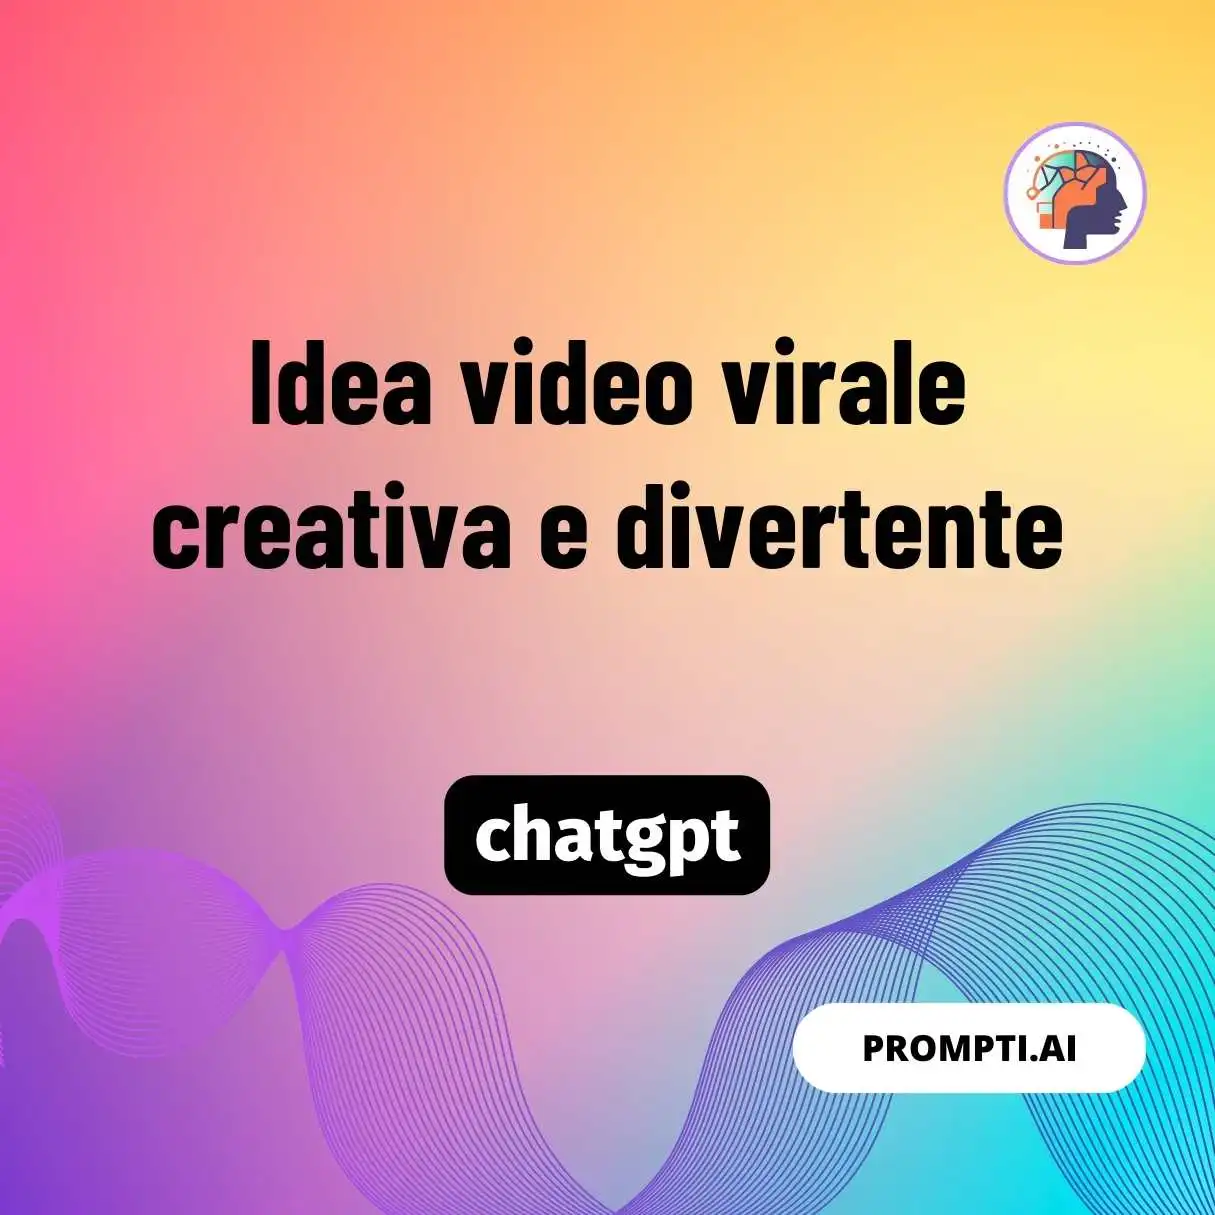 Idea video virale creativa e divertente